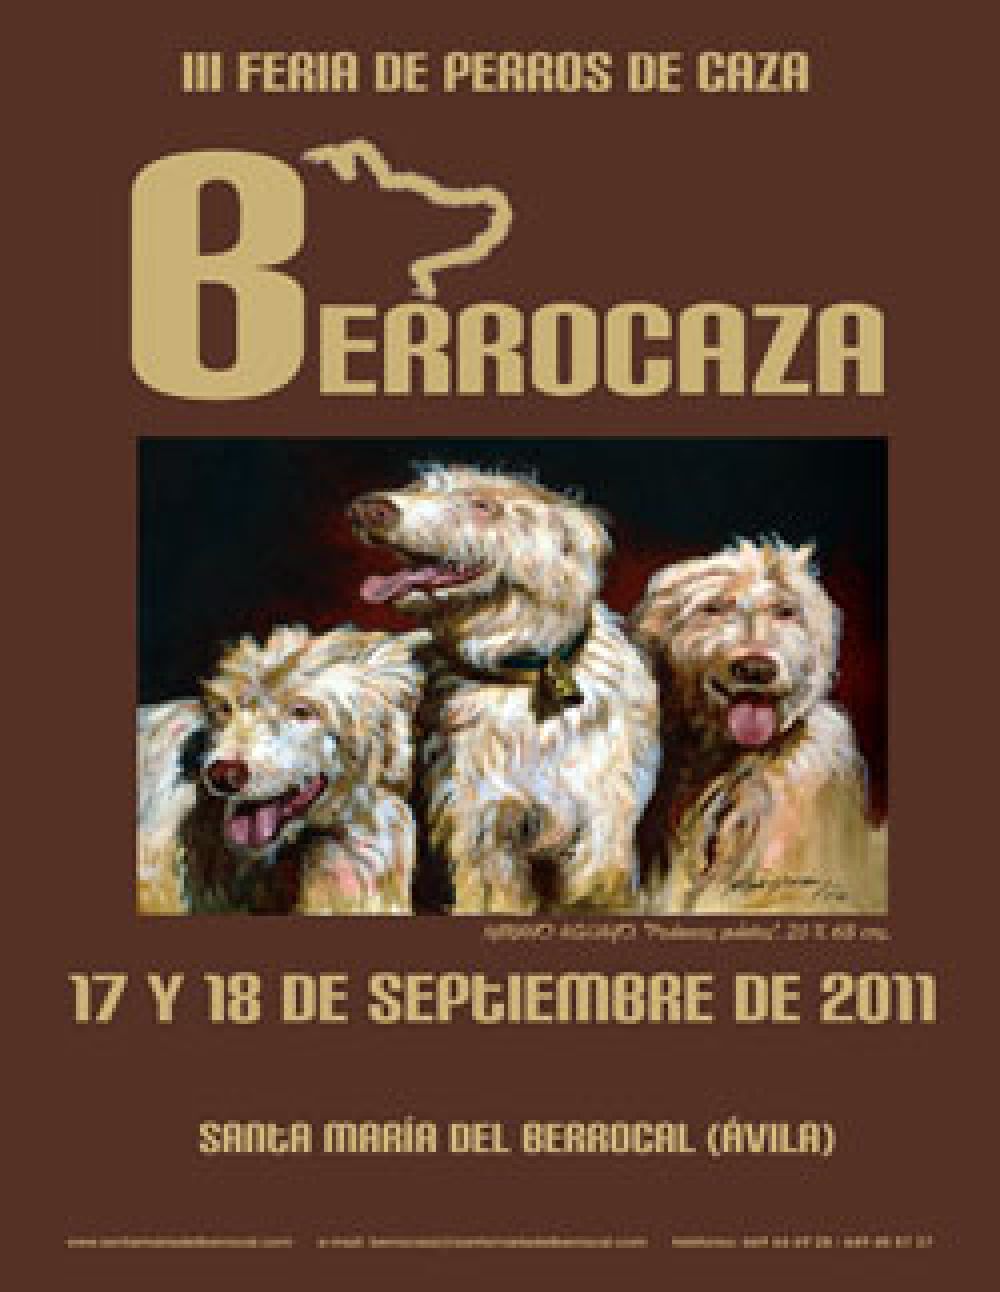 La III edición de la Feria de Perros de Caza ‘Berrocaza’ se celebrará el 17 y 18 de septiembre